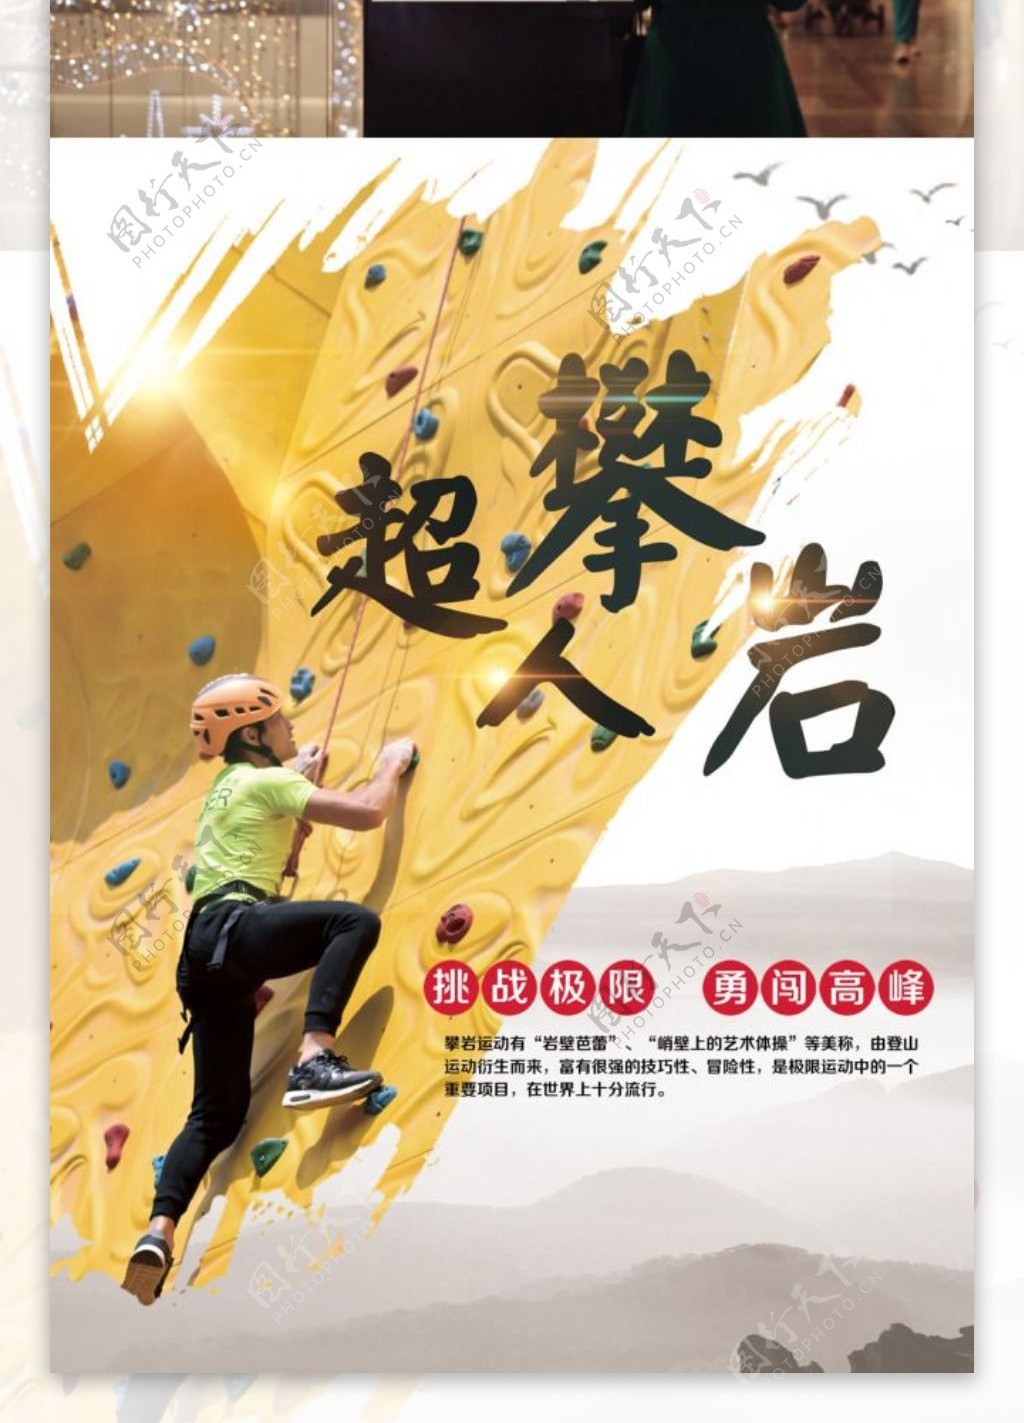 攀岩户外活动运动极限挑战宣传促销海报